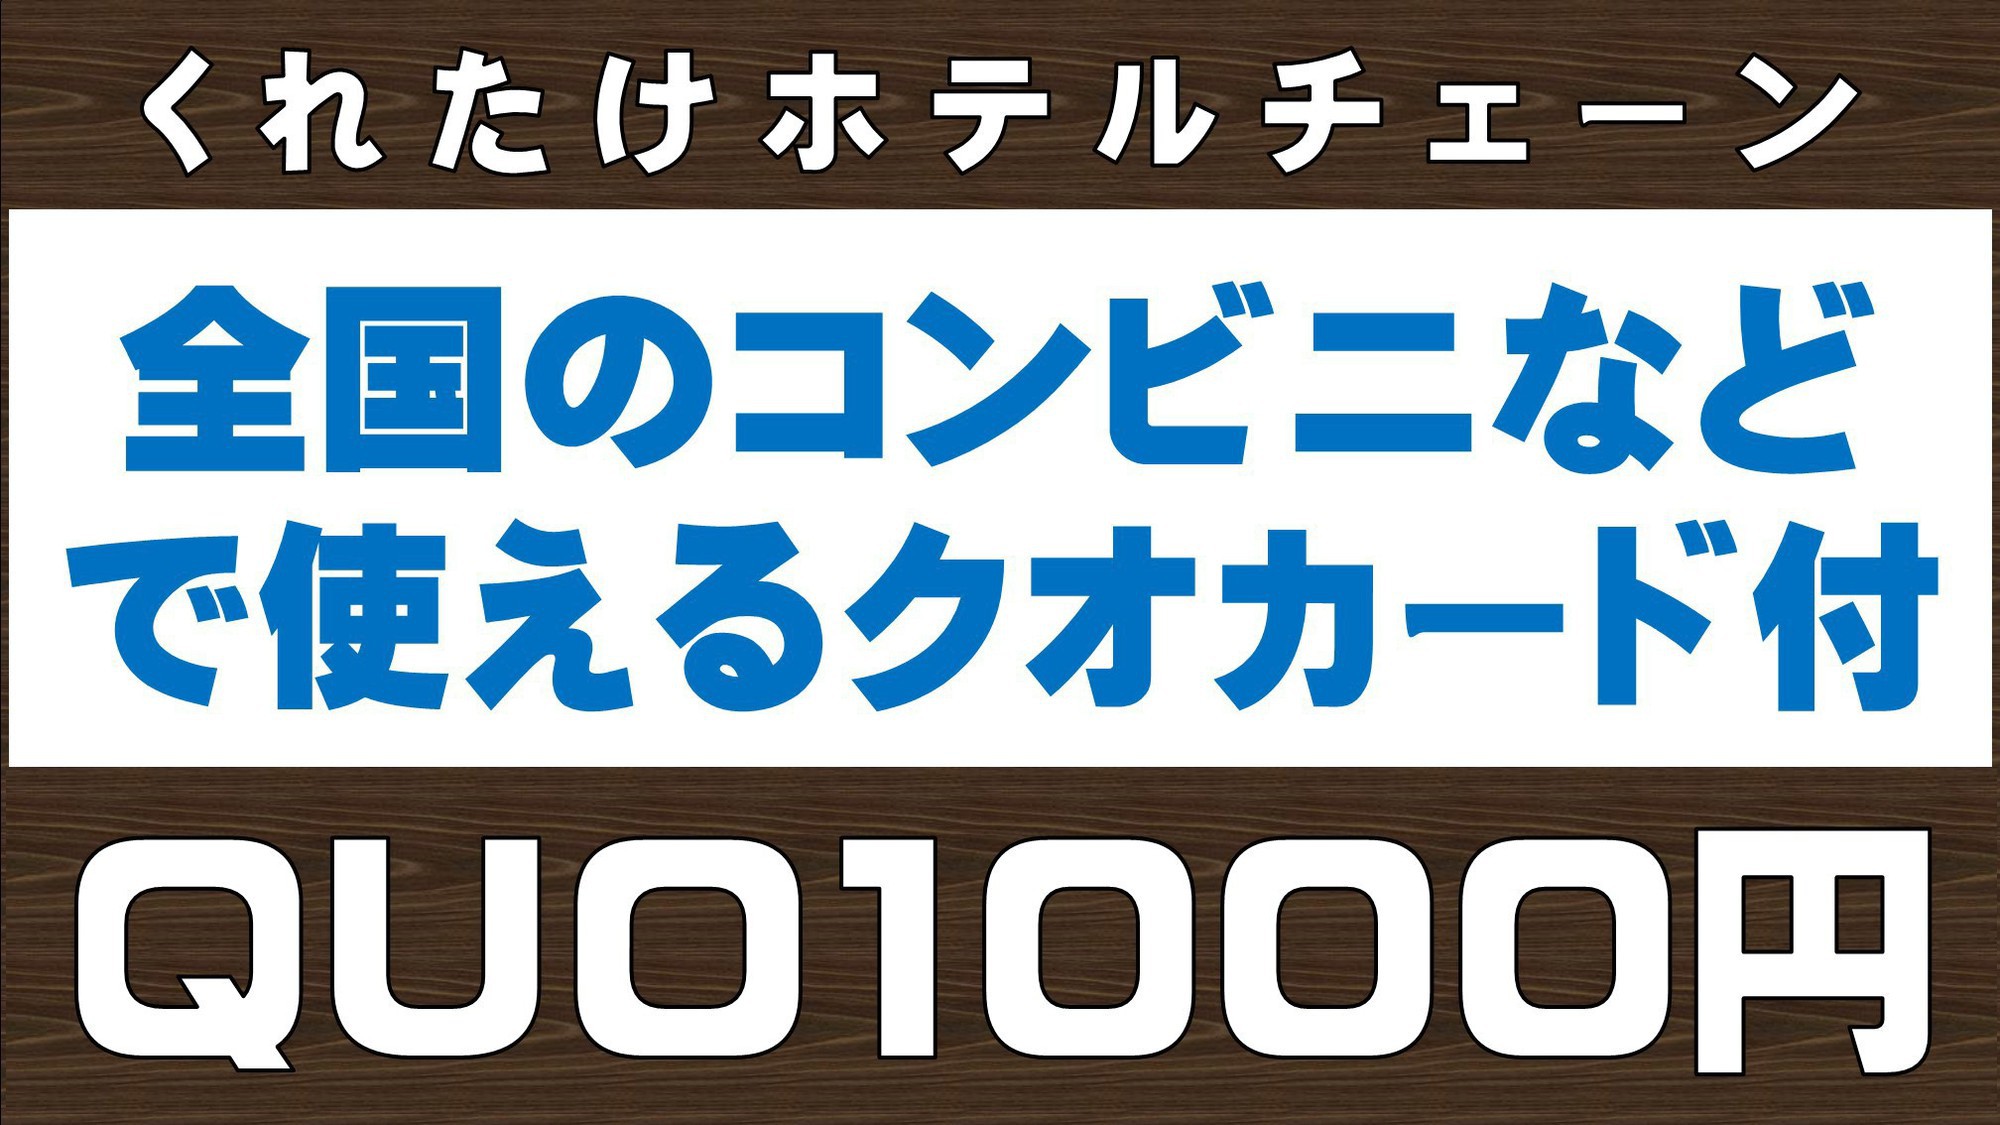 クオ1000円プラン